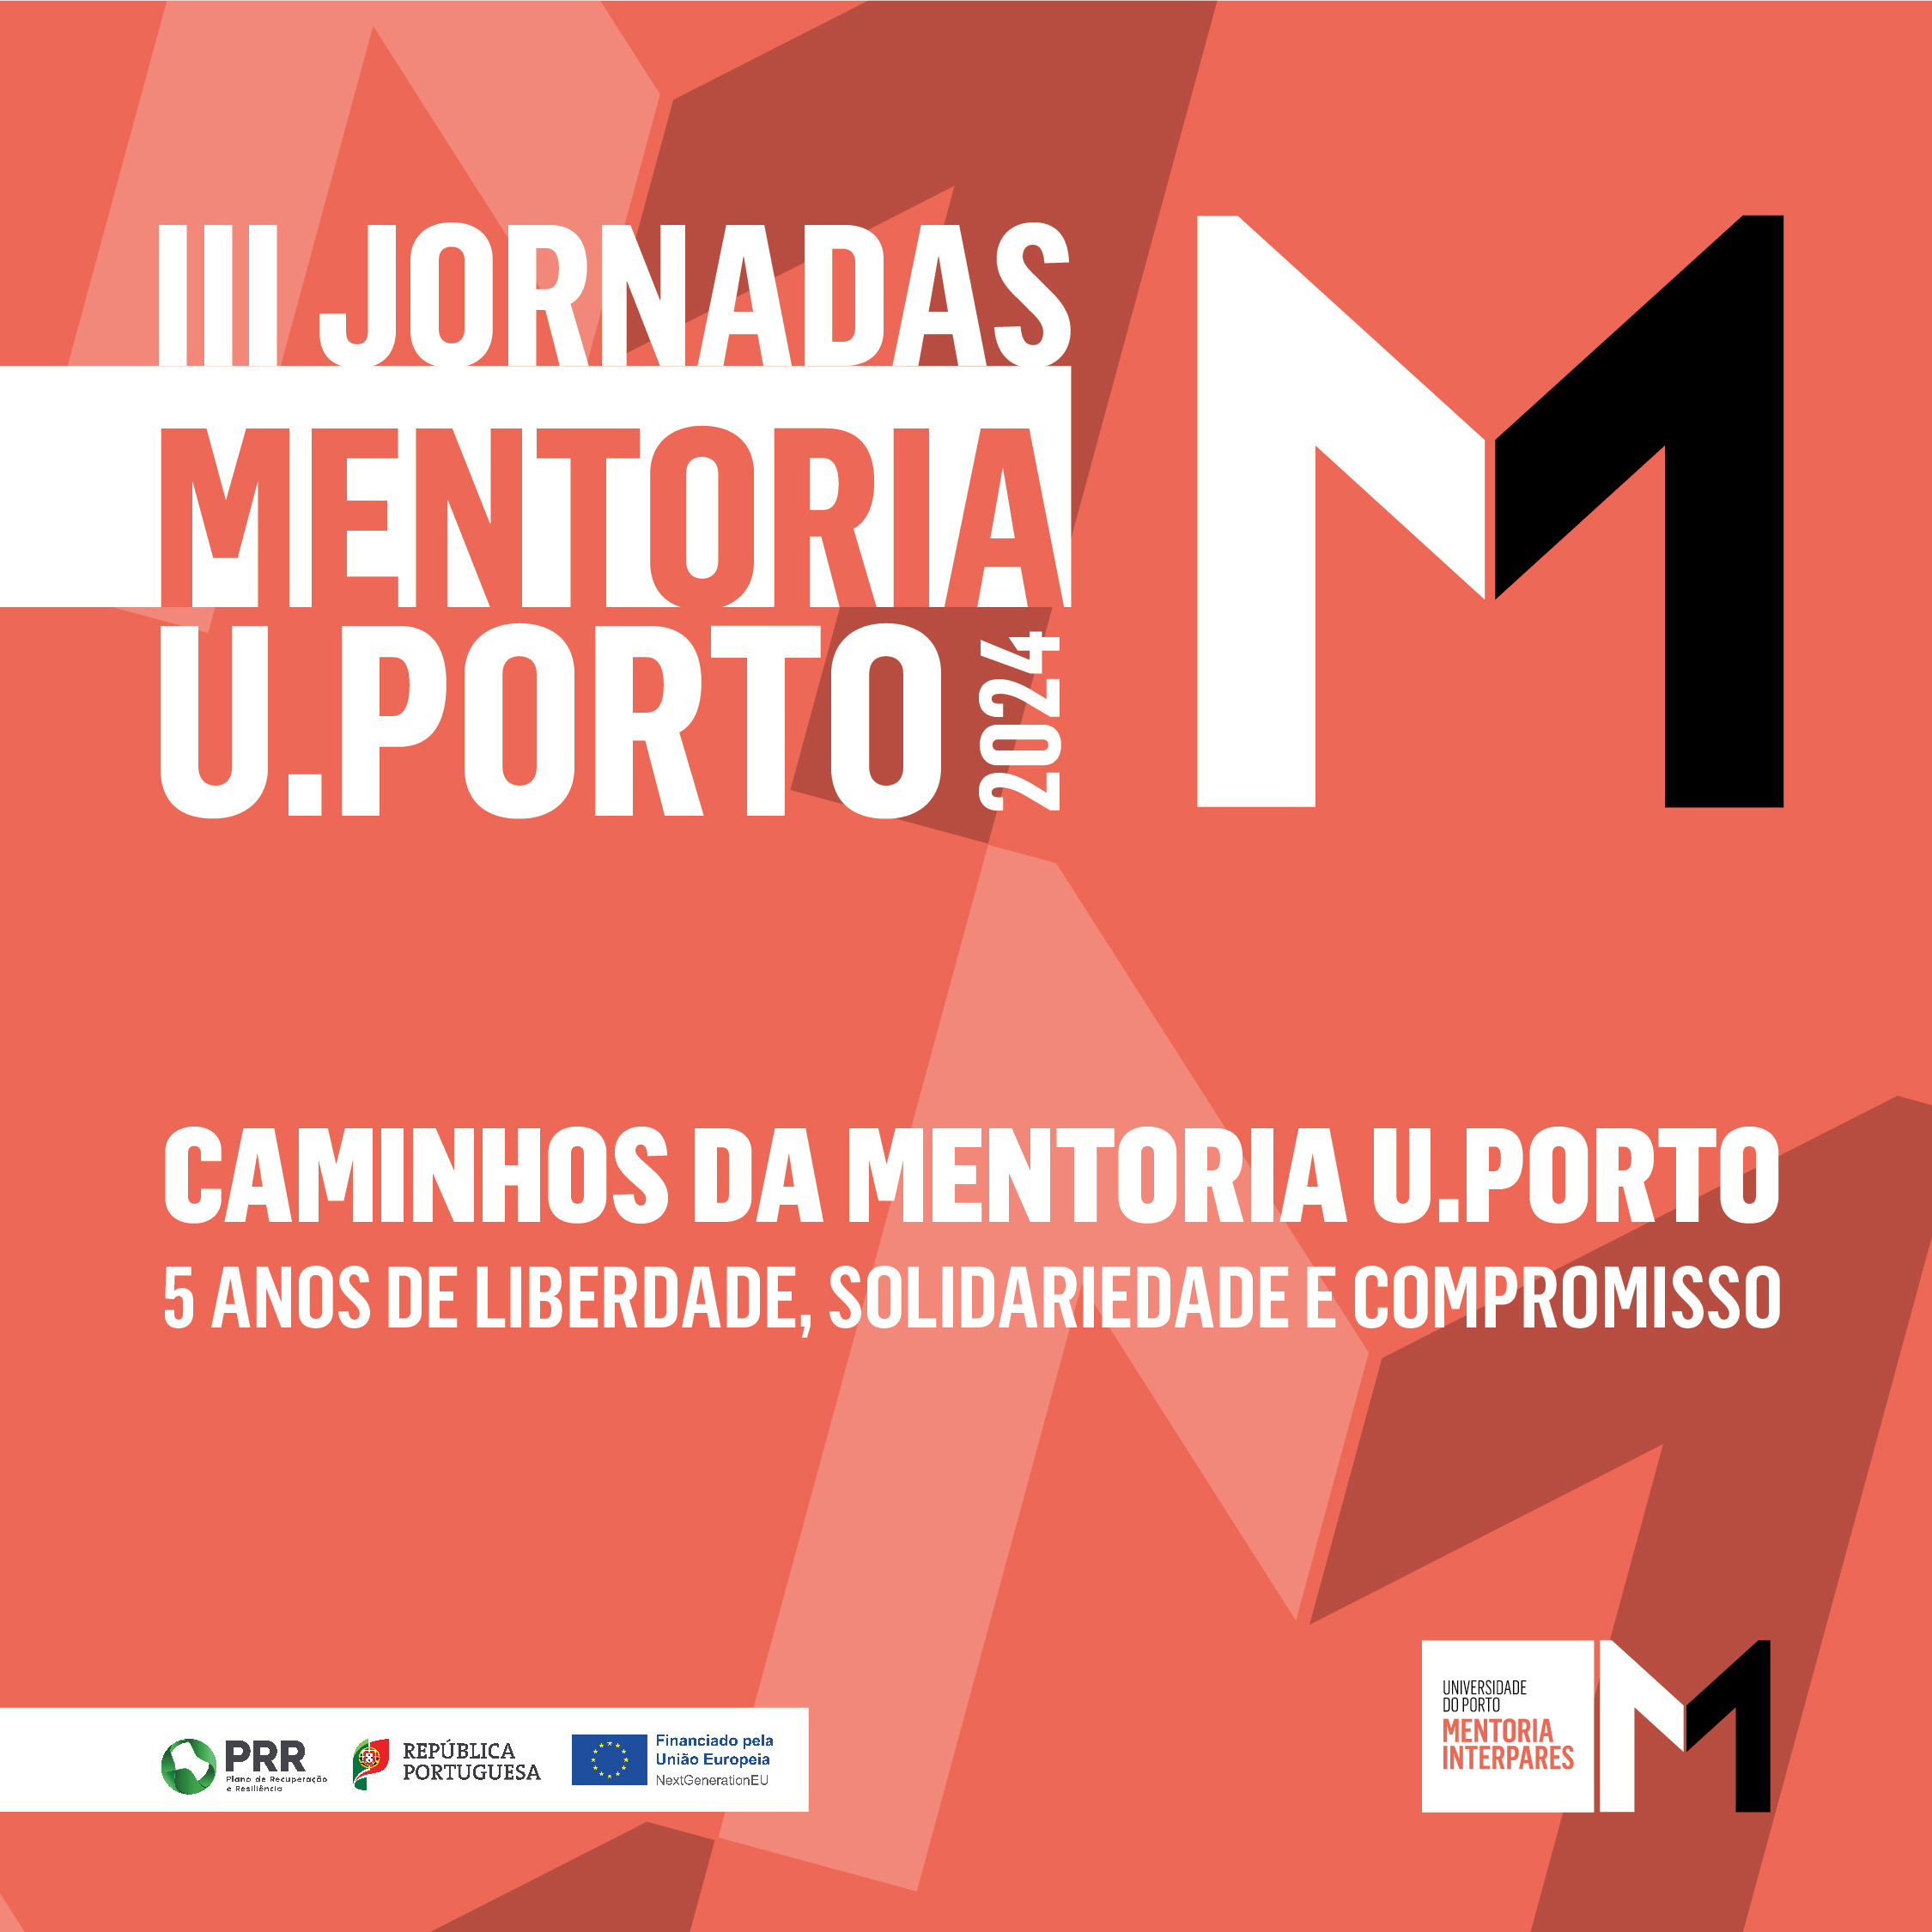 III Jornadas da Mentoria U. Porto